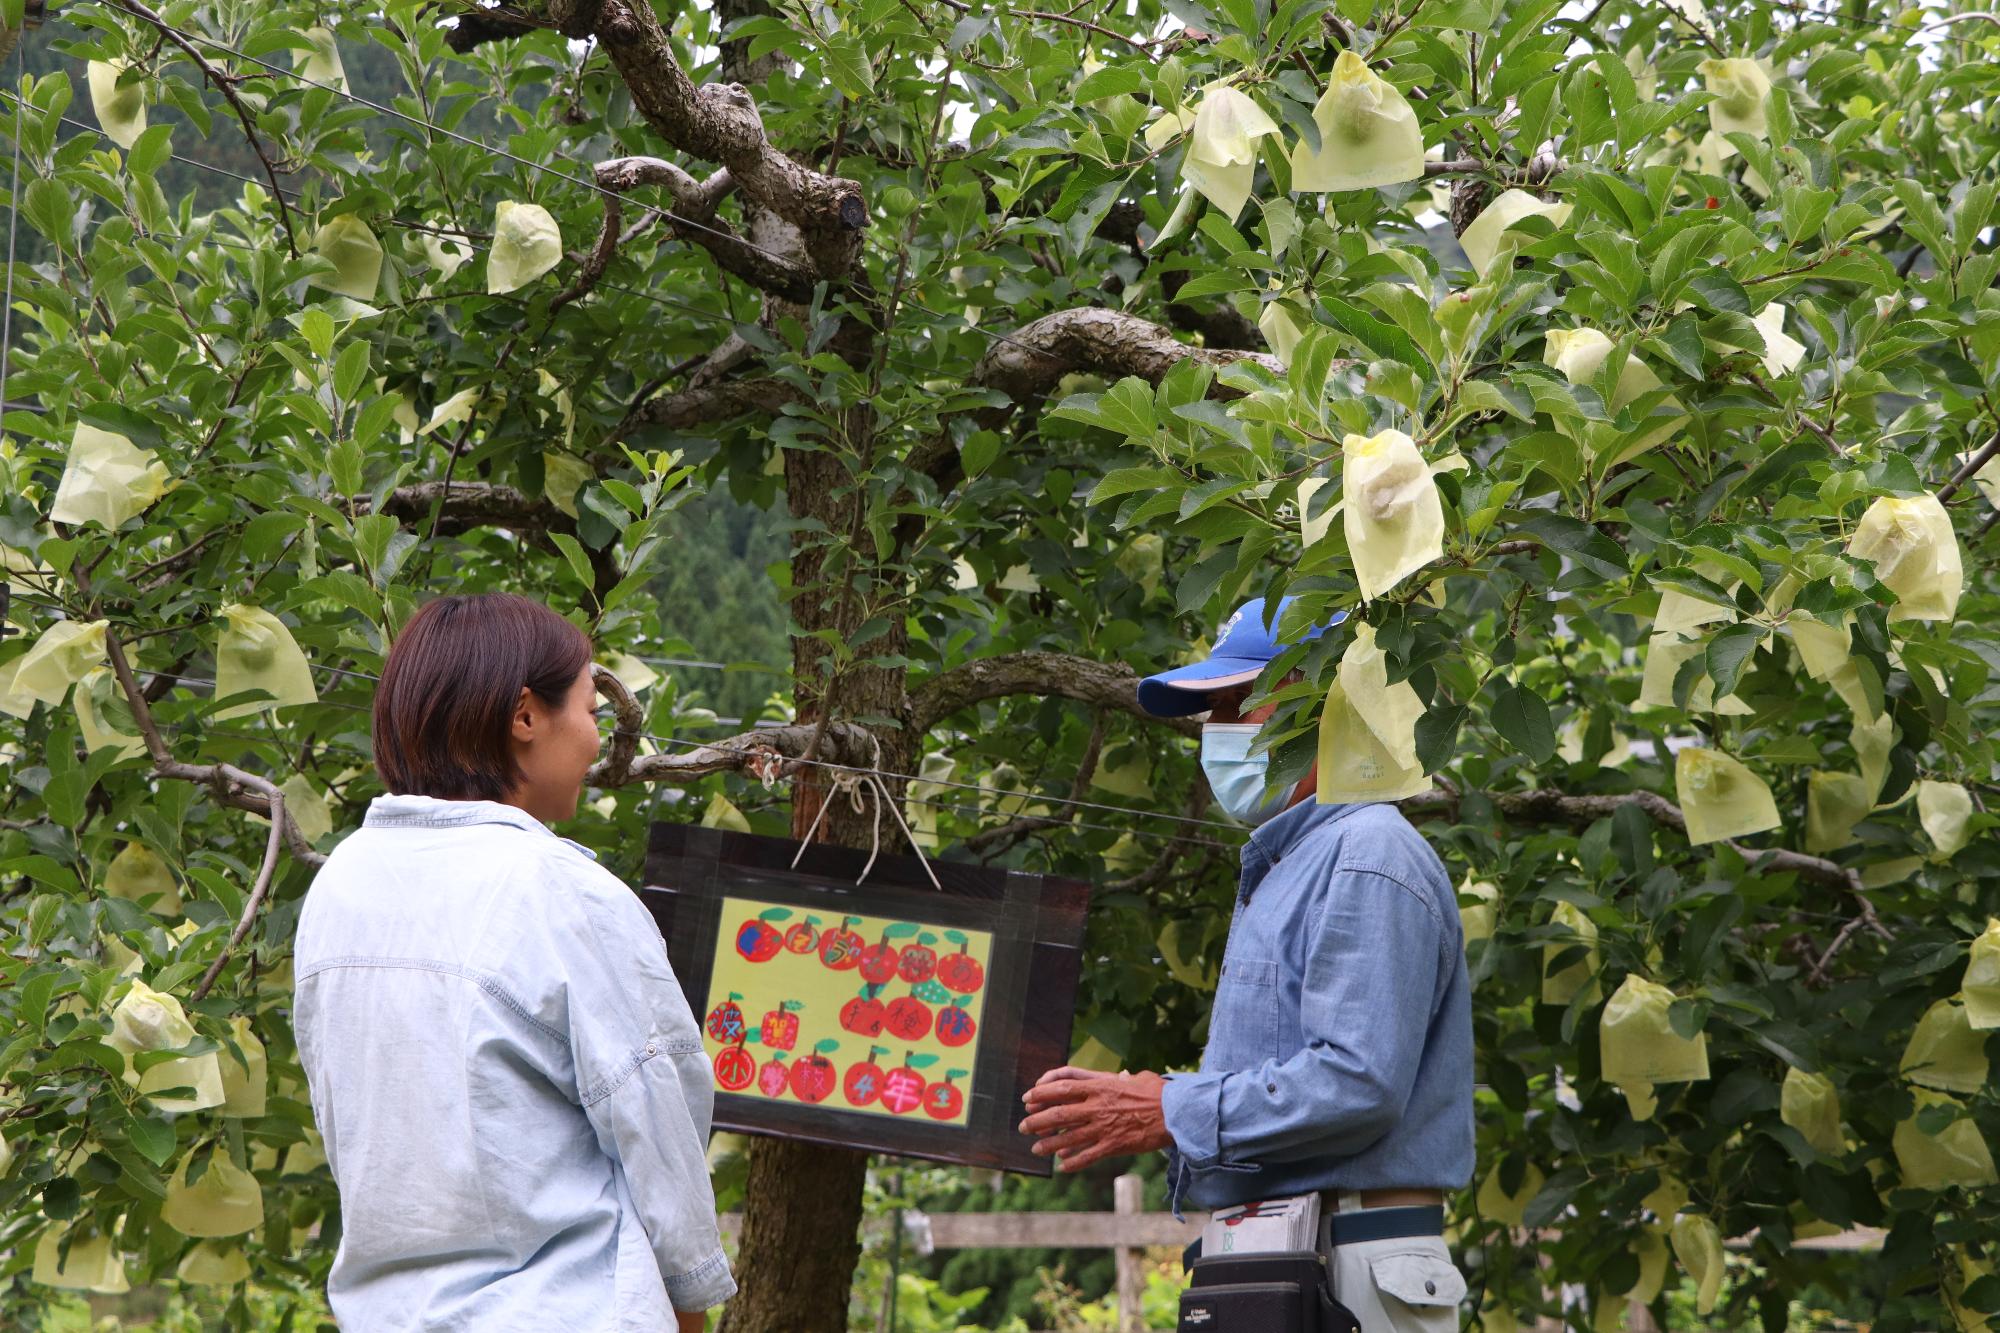 波賀小学校の4年生らが袋掛けをしたりんごの木の前で話をする原観光りんご園の道下政信さんとしそうチャンネルの森脇リポーターの写真